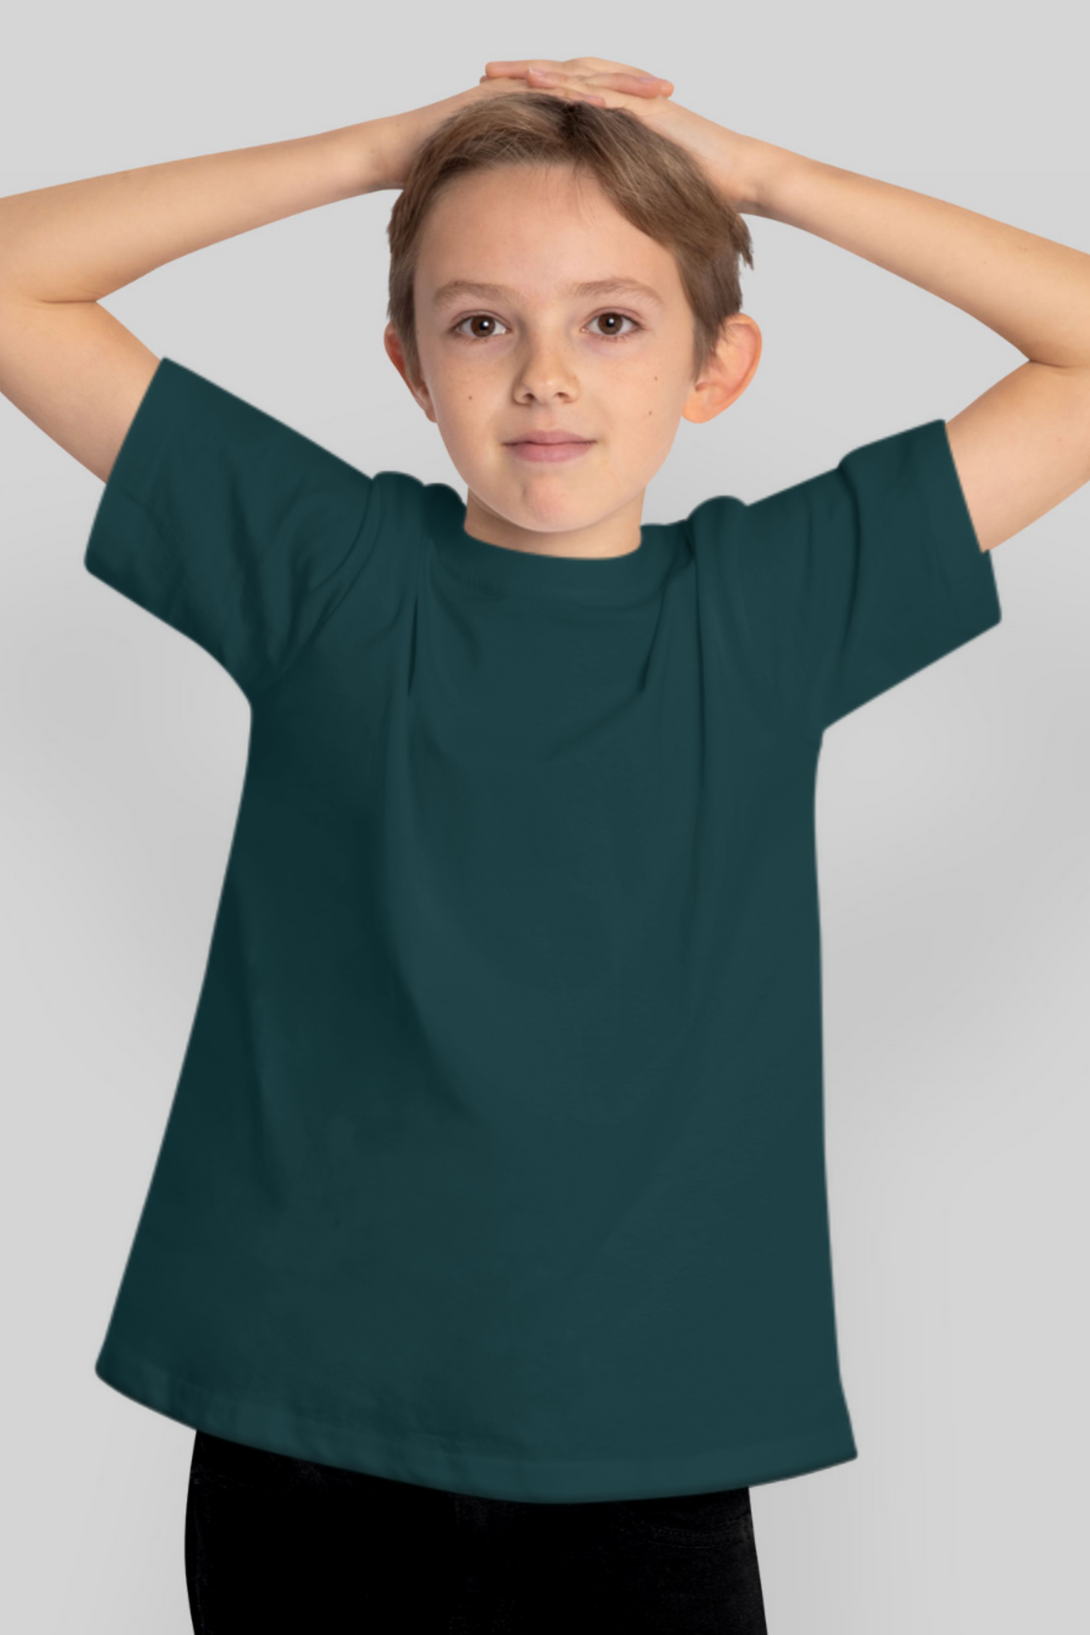 Petrol Blue T-Shirt For Boy - WowWaves - 1